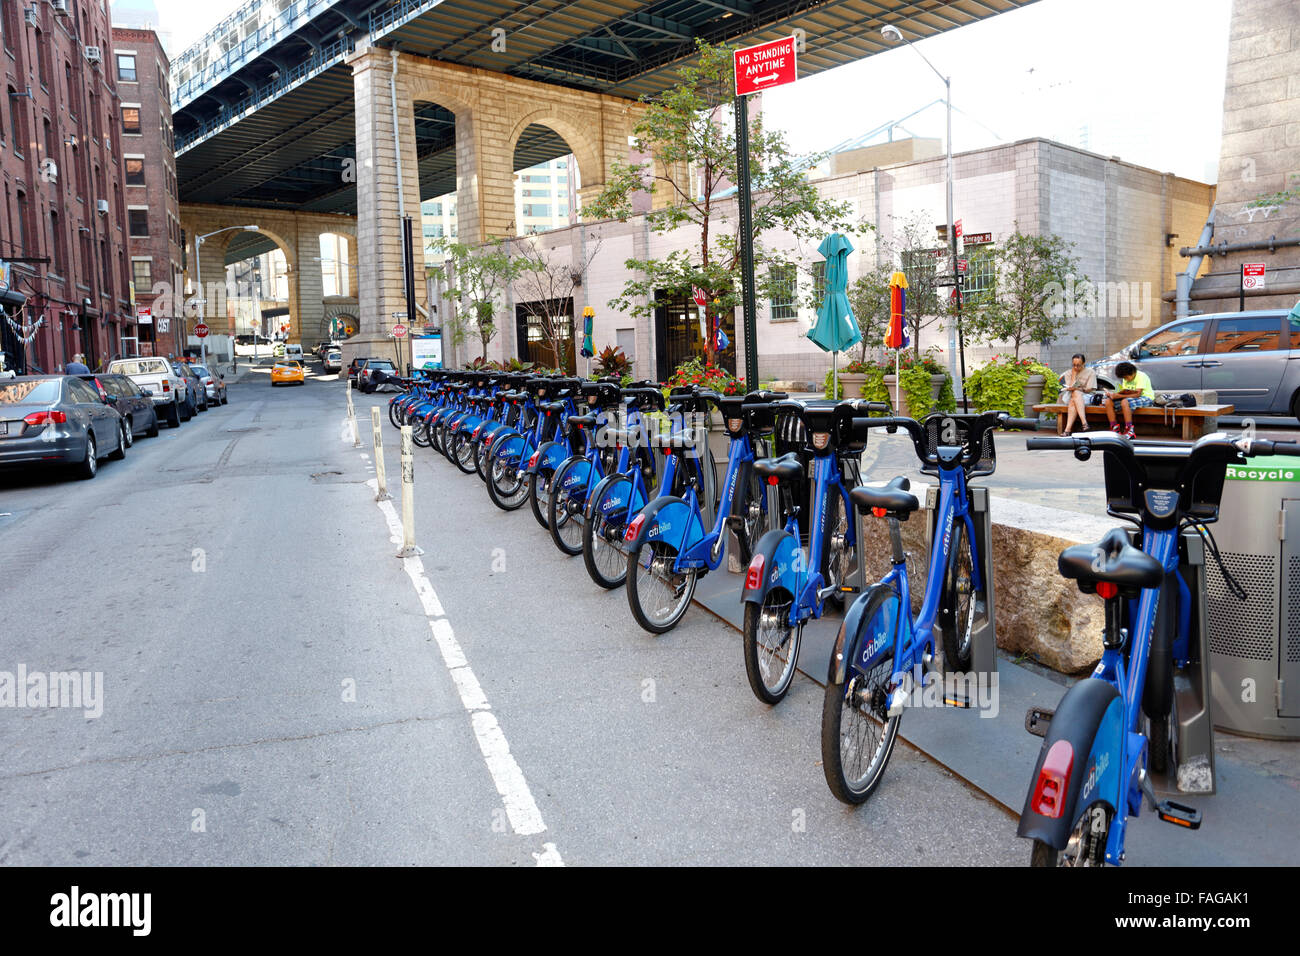 Noleggio biciclette sotto il ponte di Manhattan in DUMBO nieghborhood di Brooklyn New York City Foto Stock